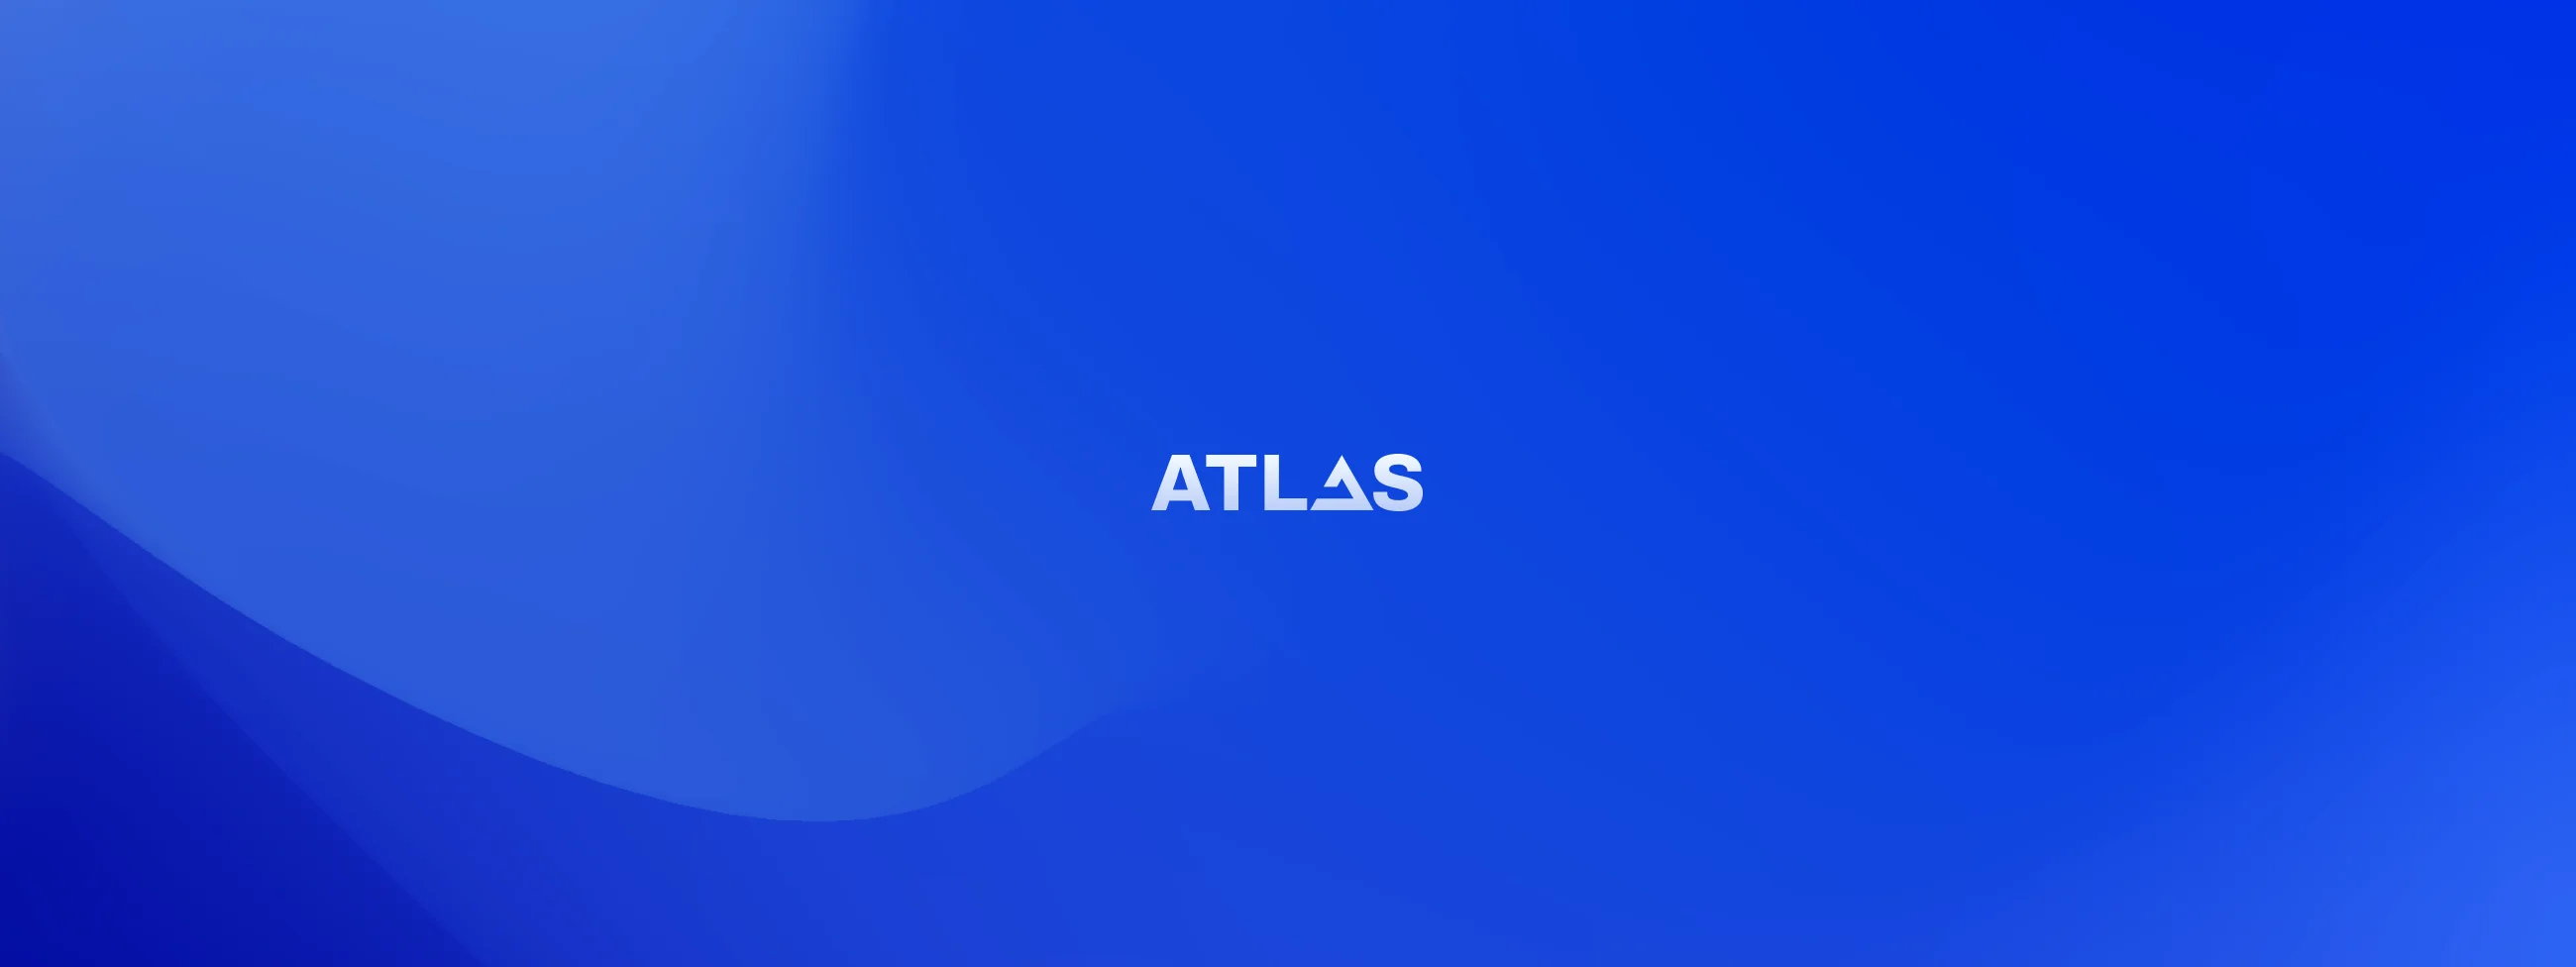 atlas os wallpaper